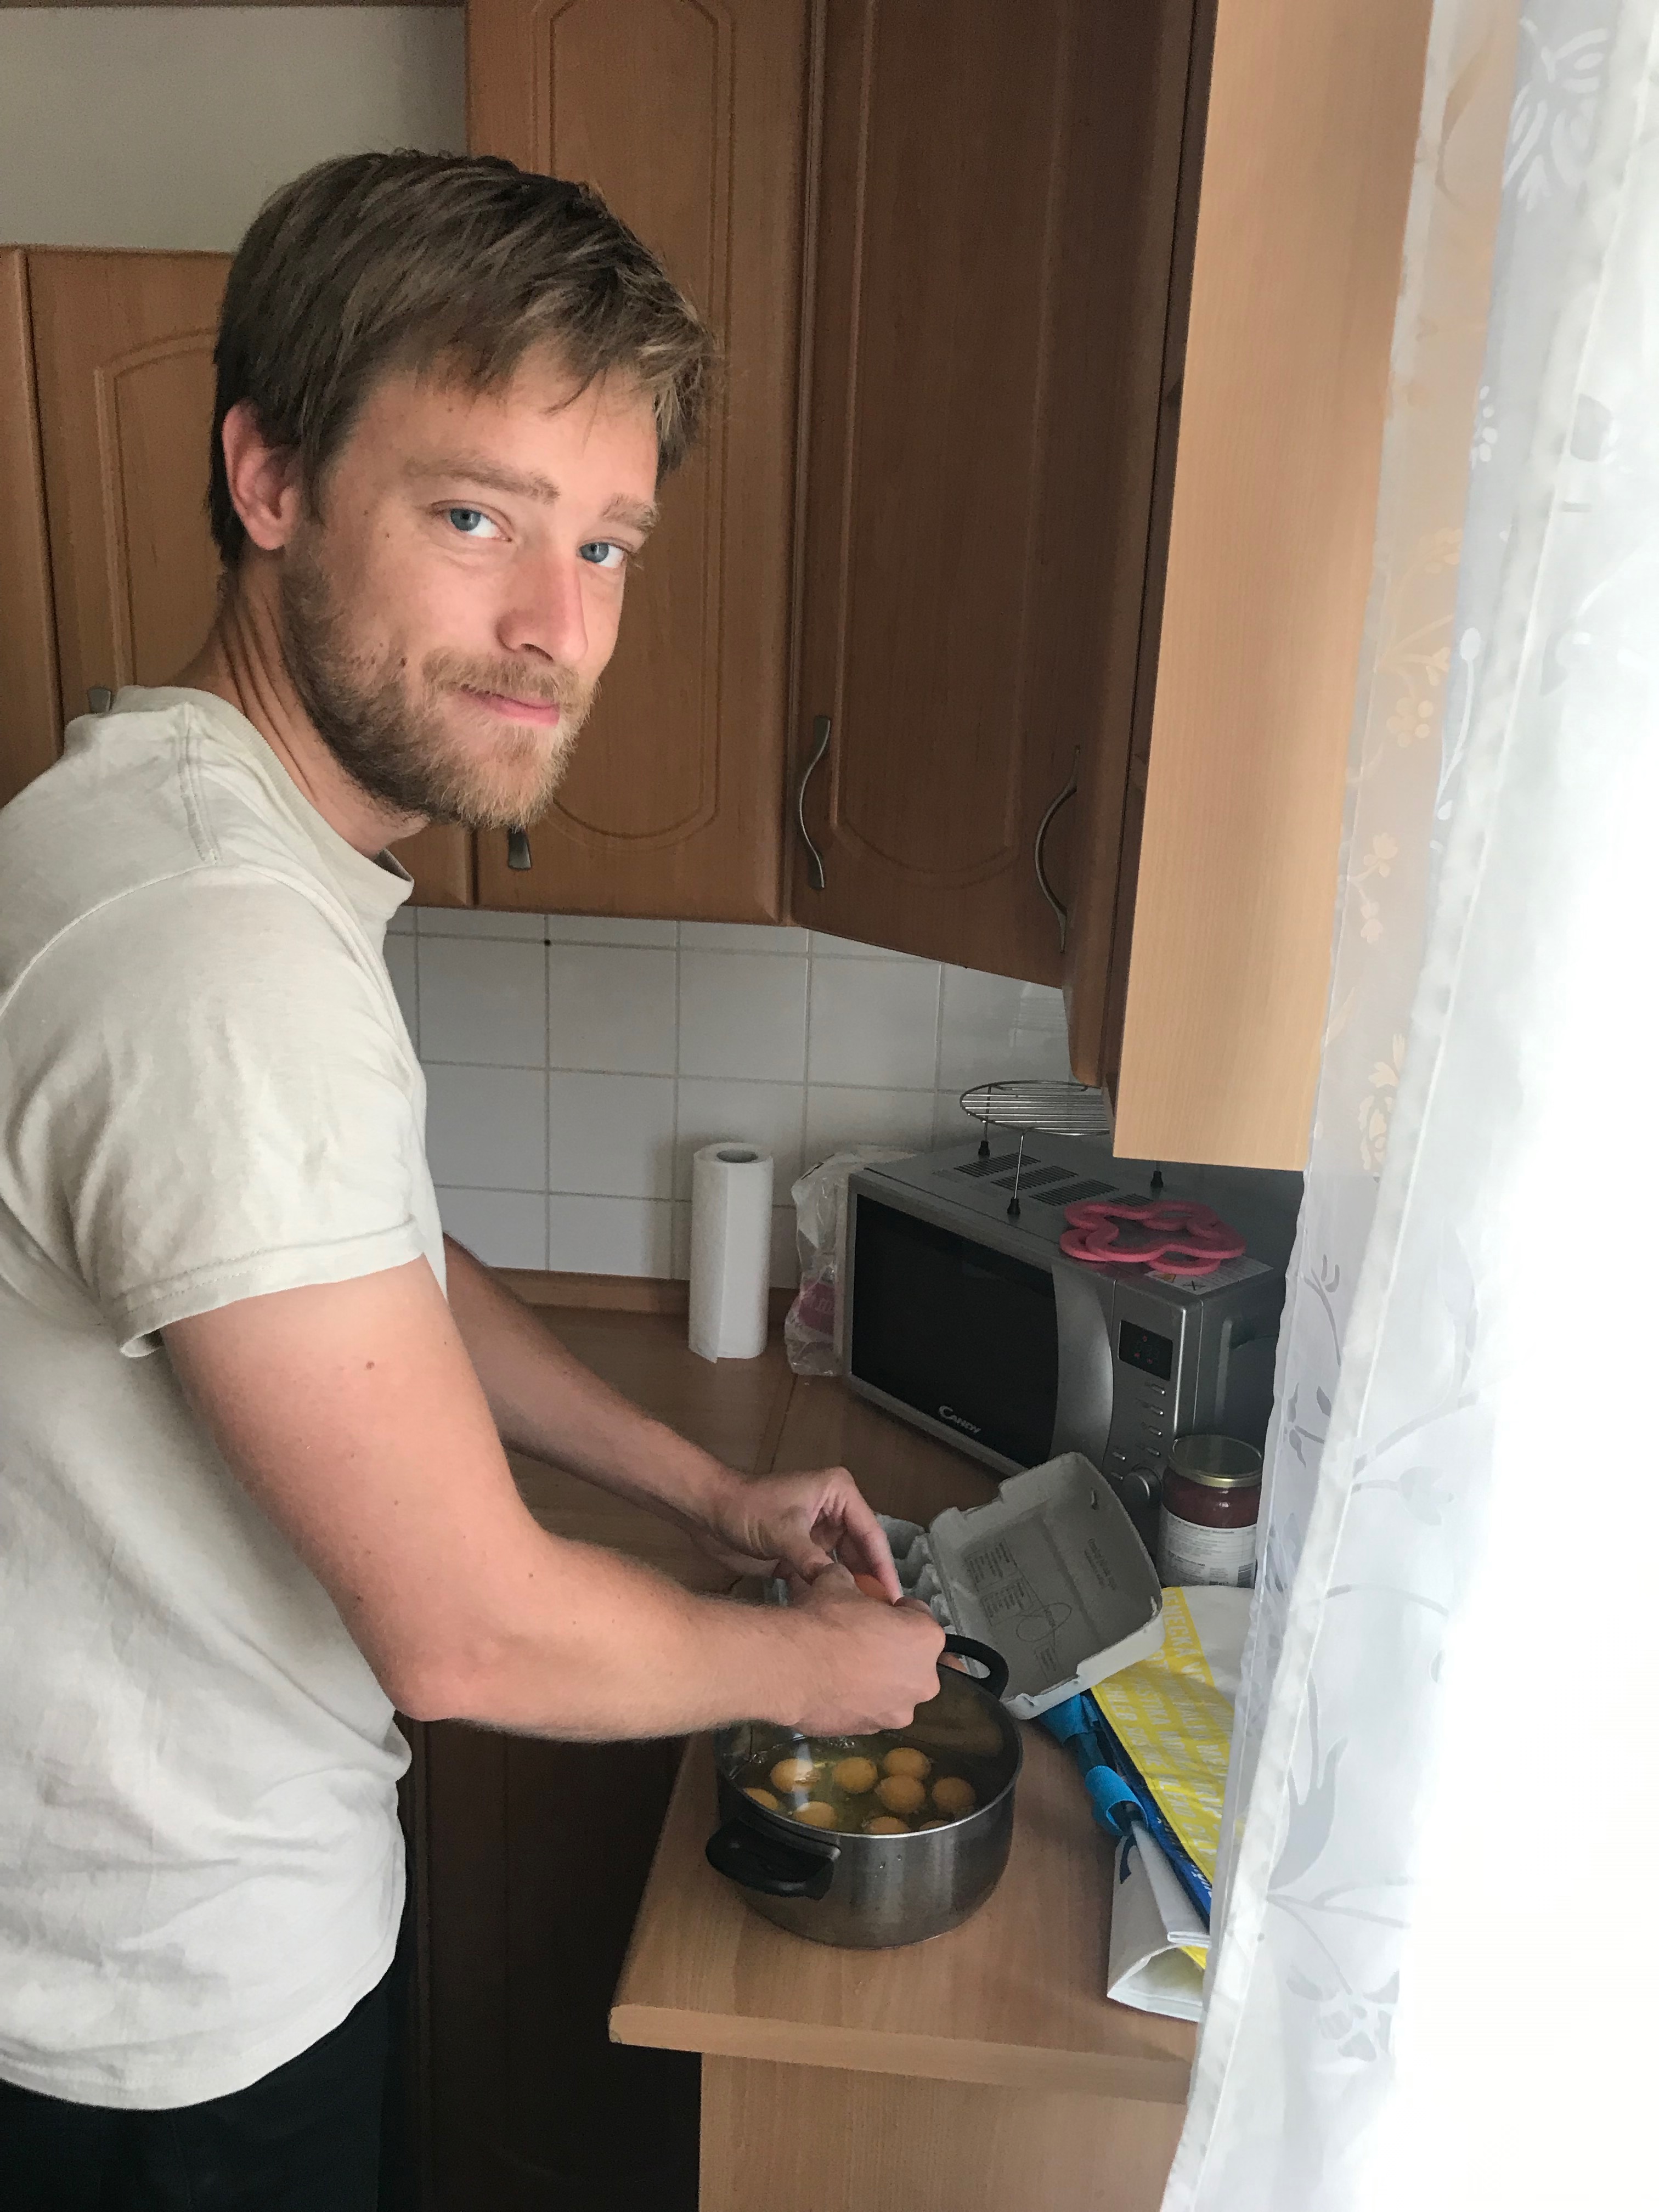 Image 6. Rasmus is preparing a breakfast. 